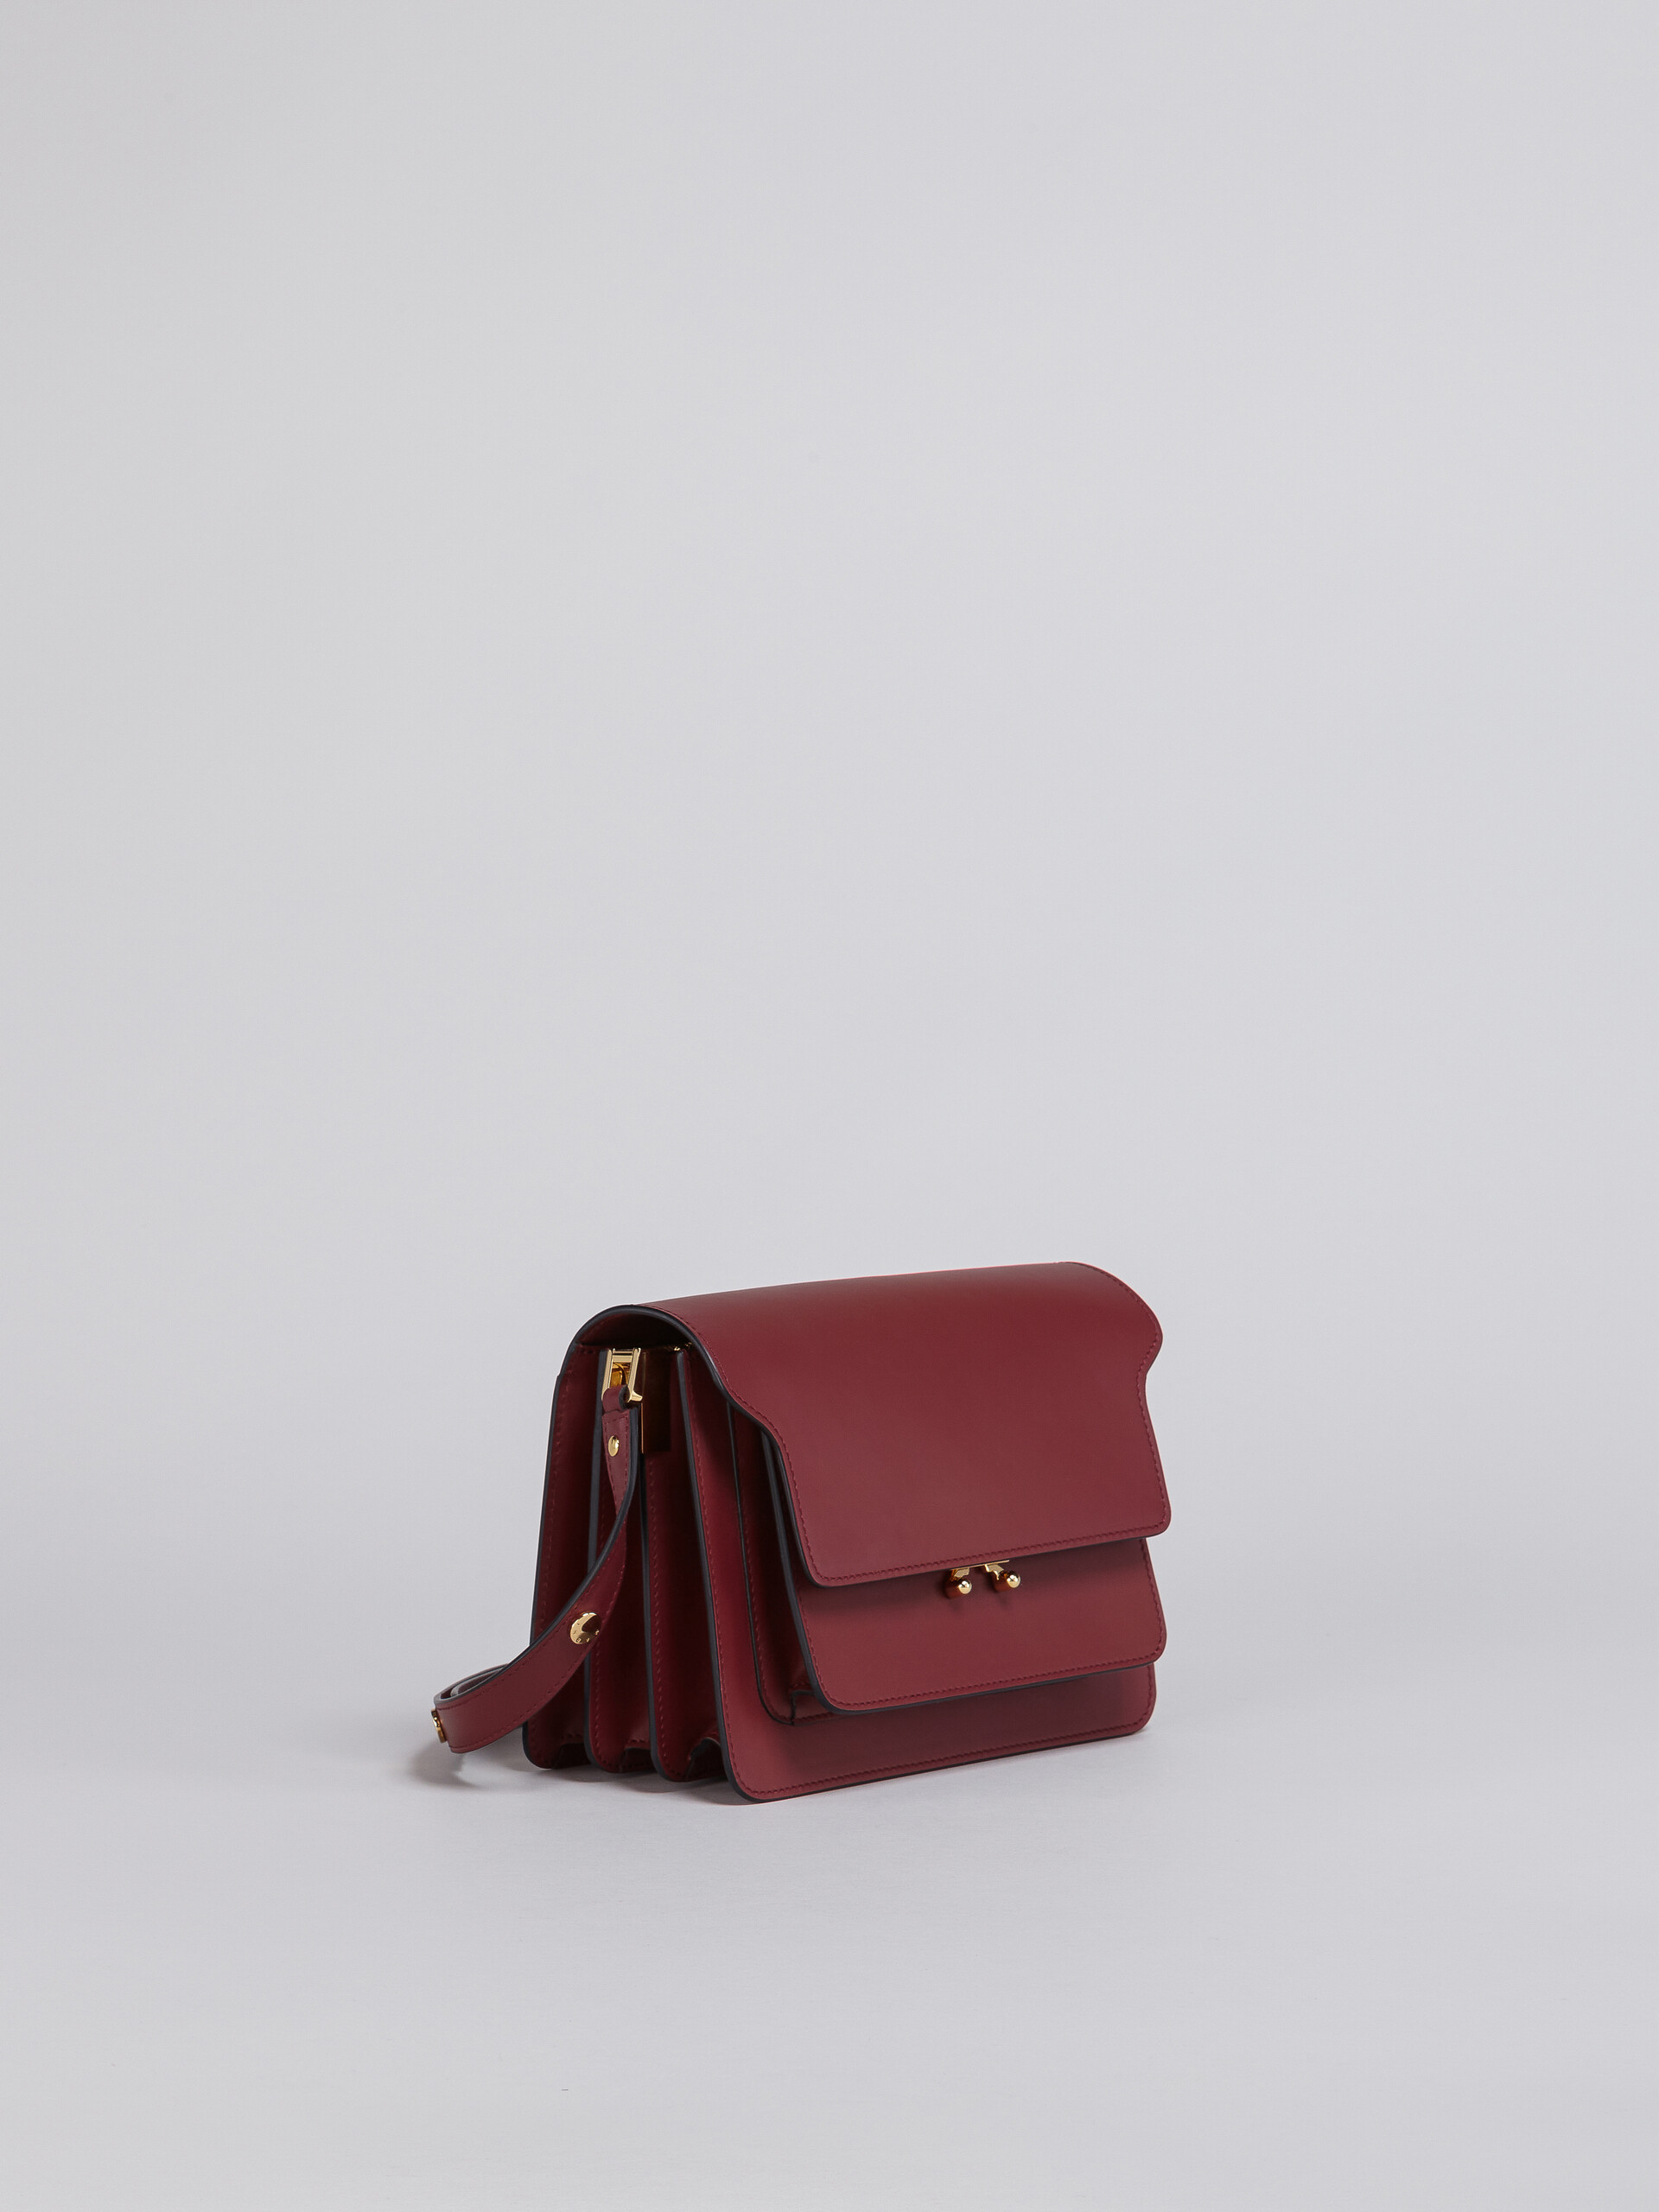 TRUNK bag in vitello - Borse a spalla - Image 4